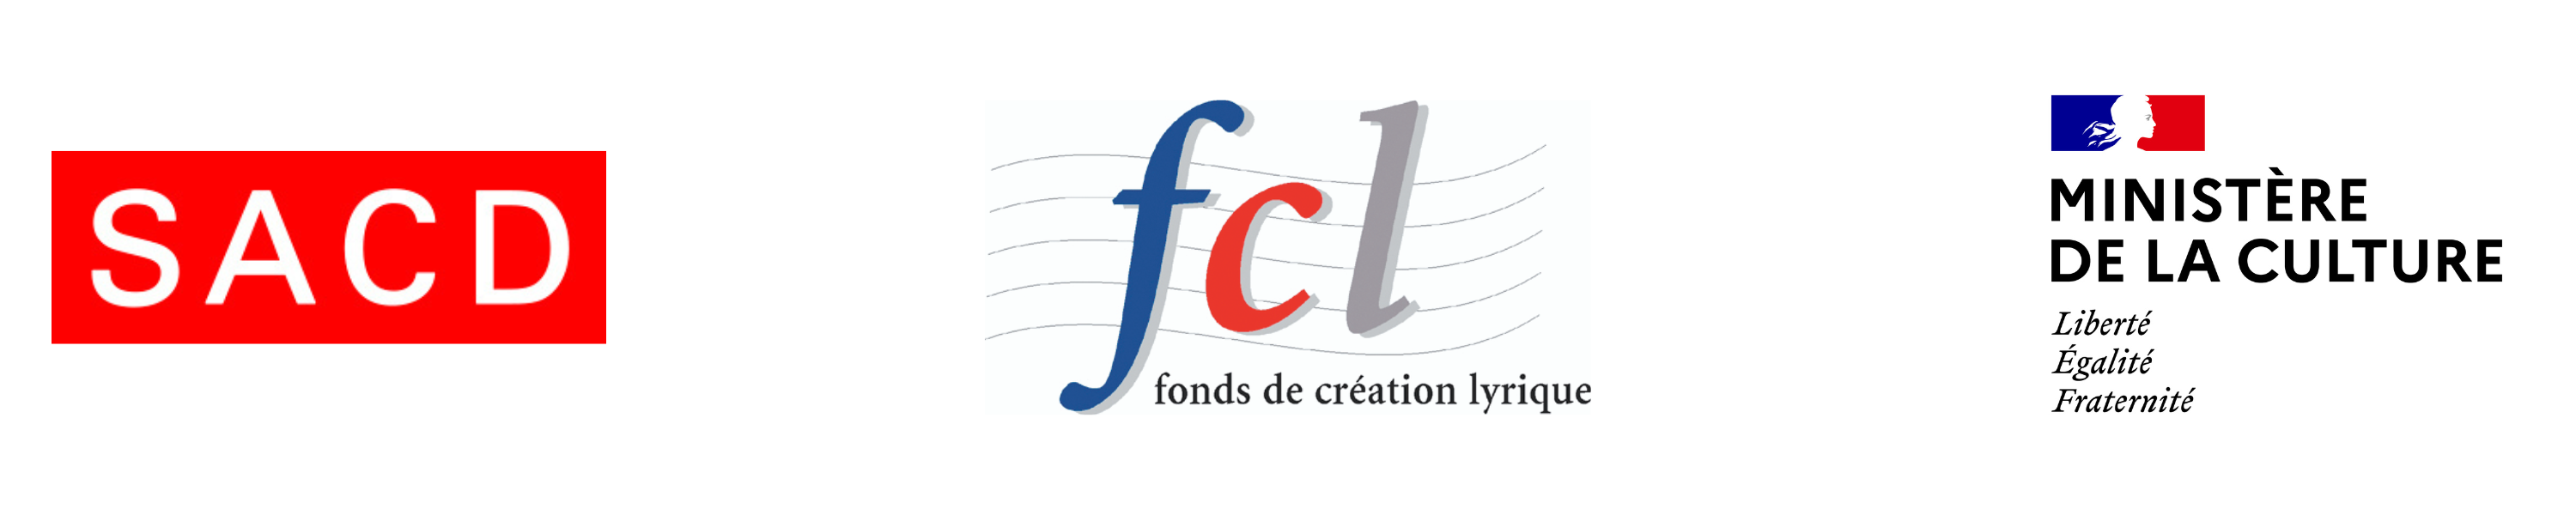 Fonds de création lyrique logos 2022